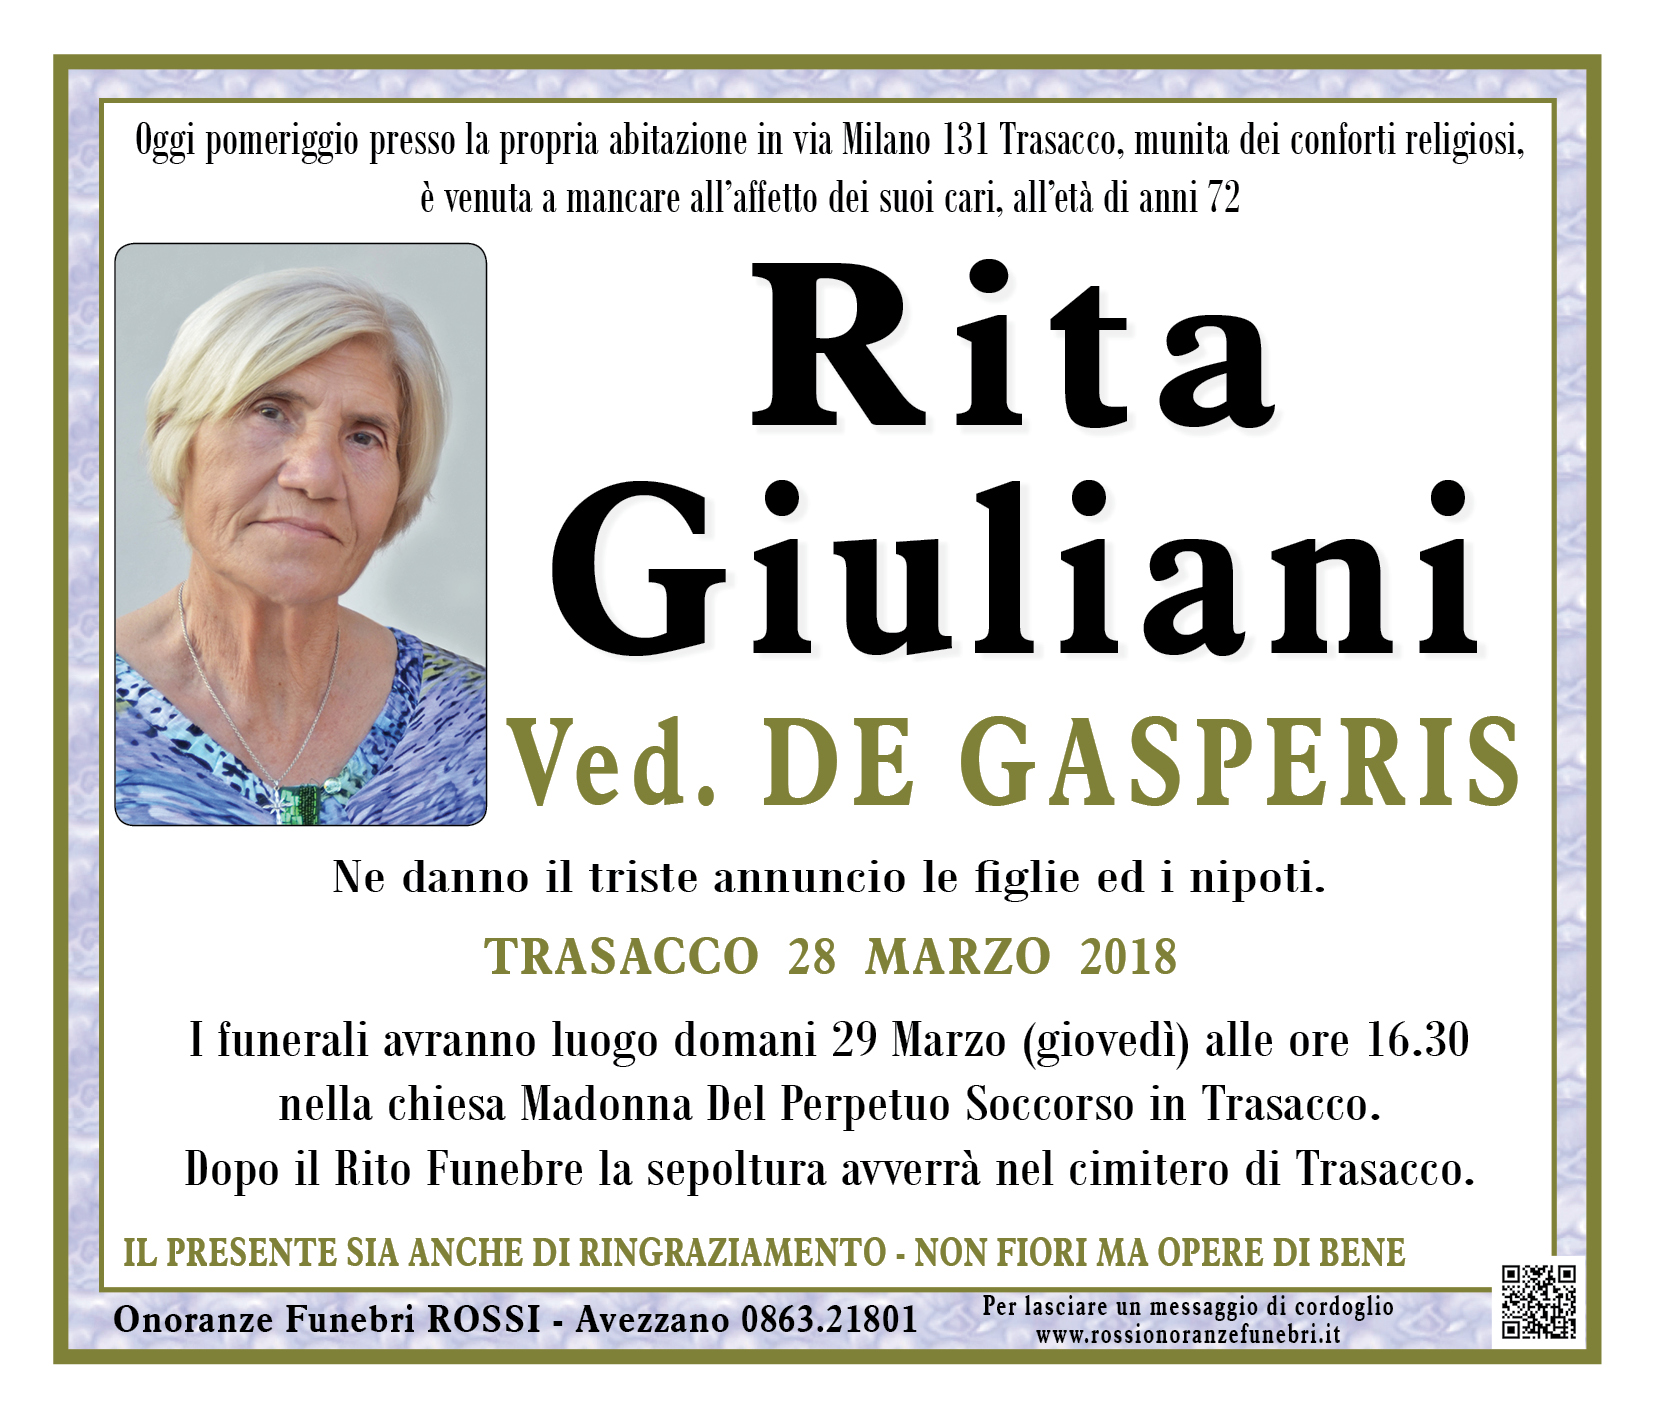 Rita Giuliani